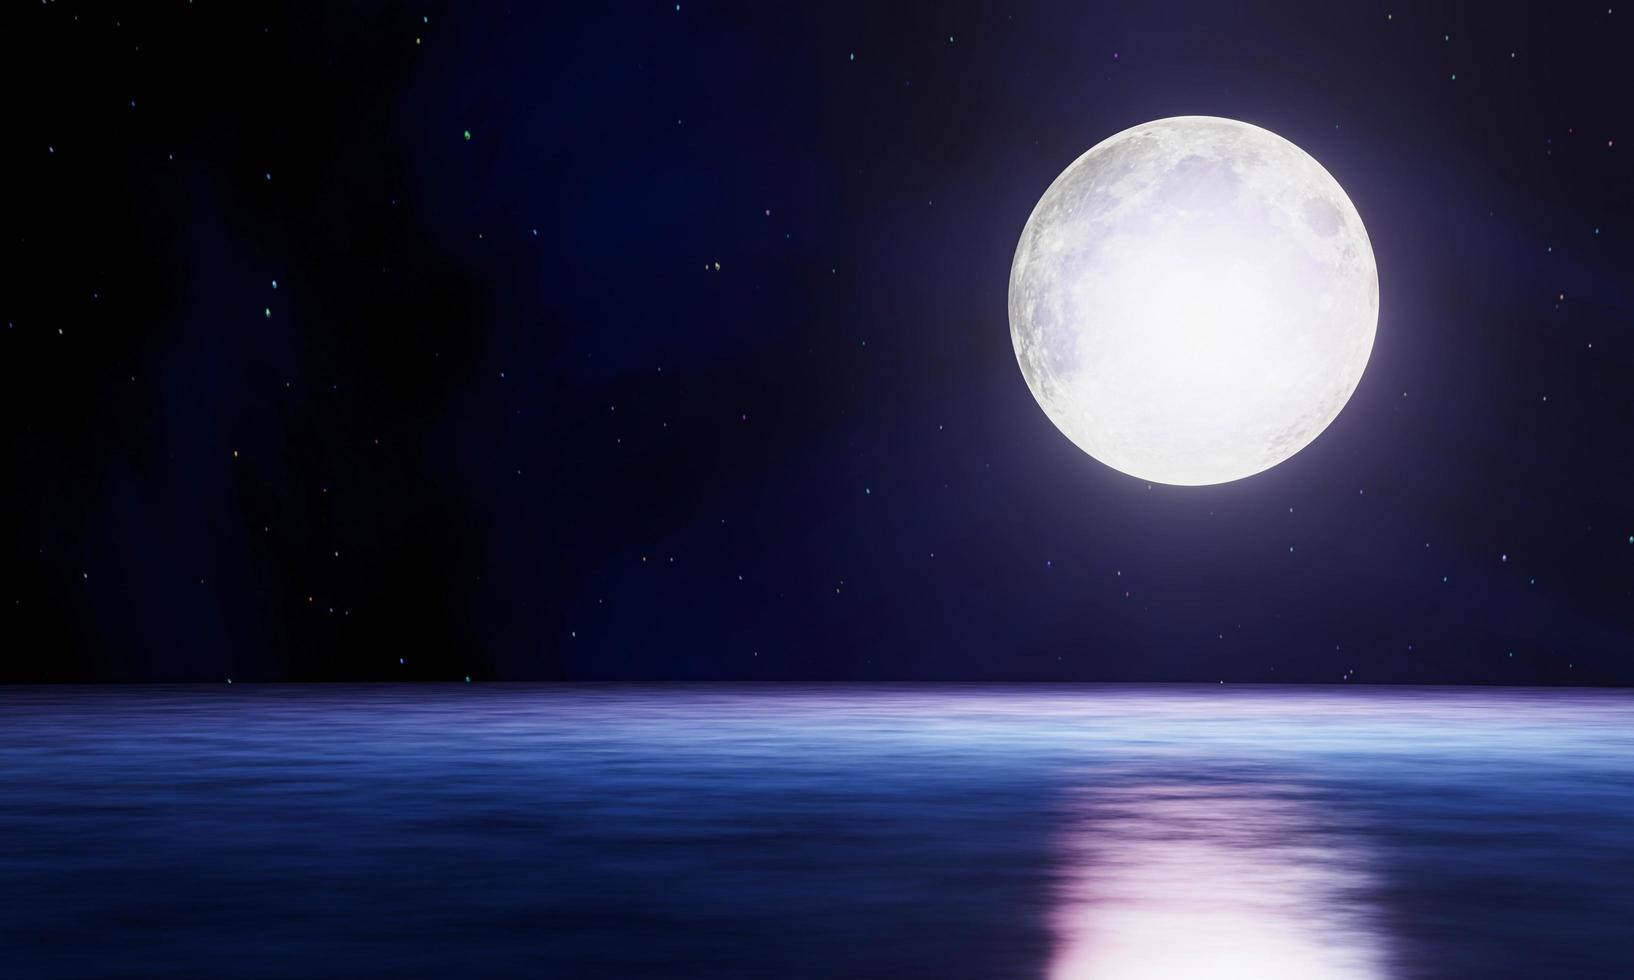 de blauwe volle maan wordt weerspiegeld in de zee. een golf van water van de oceaan naar het eiland. de lucht heeft veel sterren. rimpelingen op de zee 's nachts. 3D-rendering foto